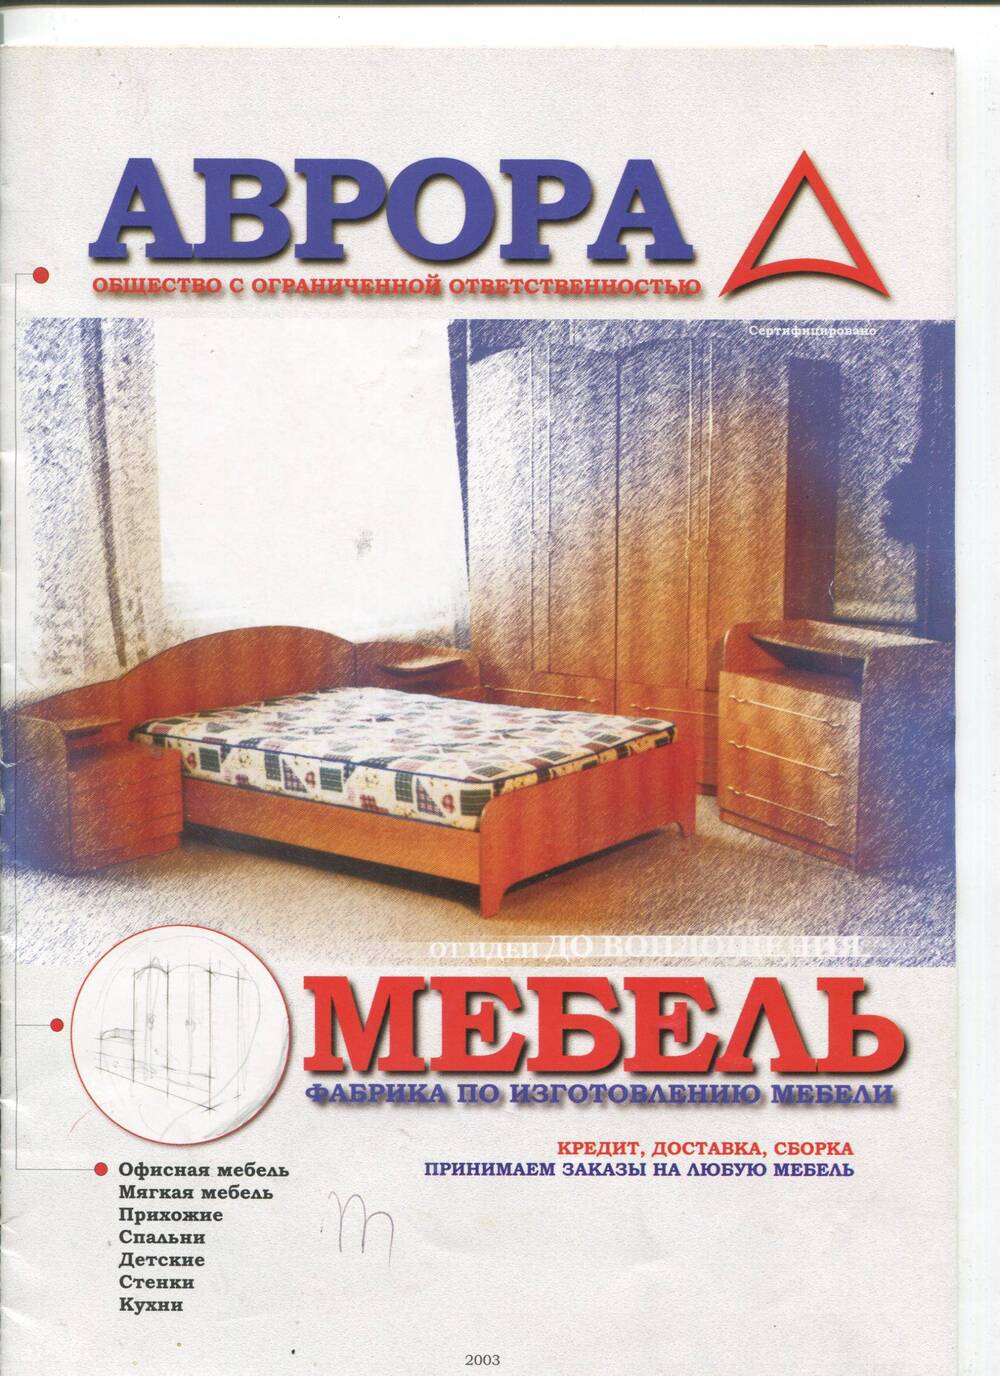 Журнал с продукцией фирмы Аврора. г.Димитровград, 2003 г.